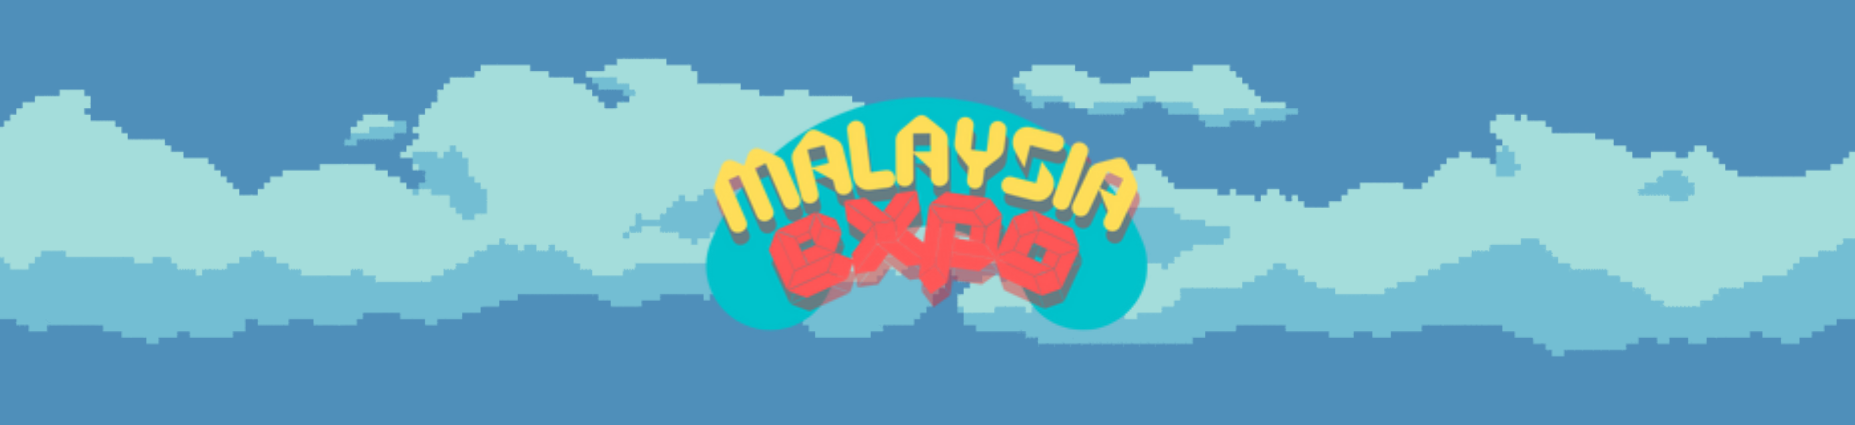 Malaysia Expo